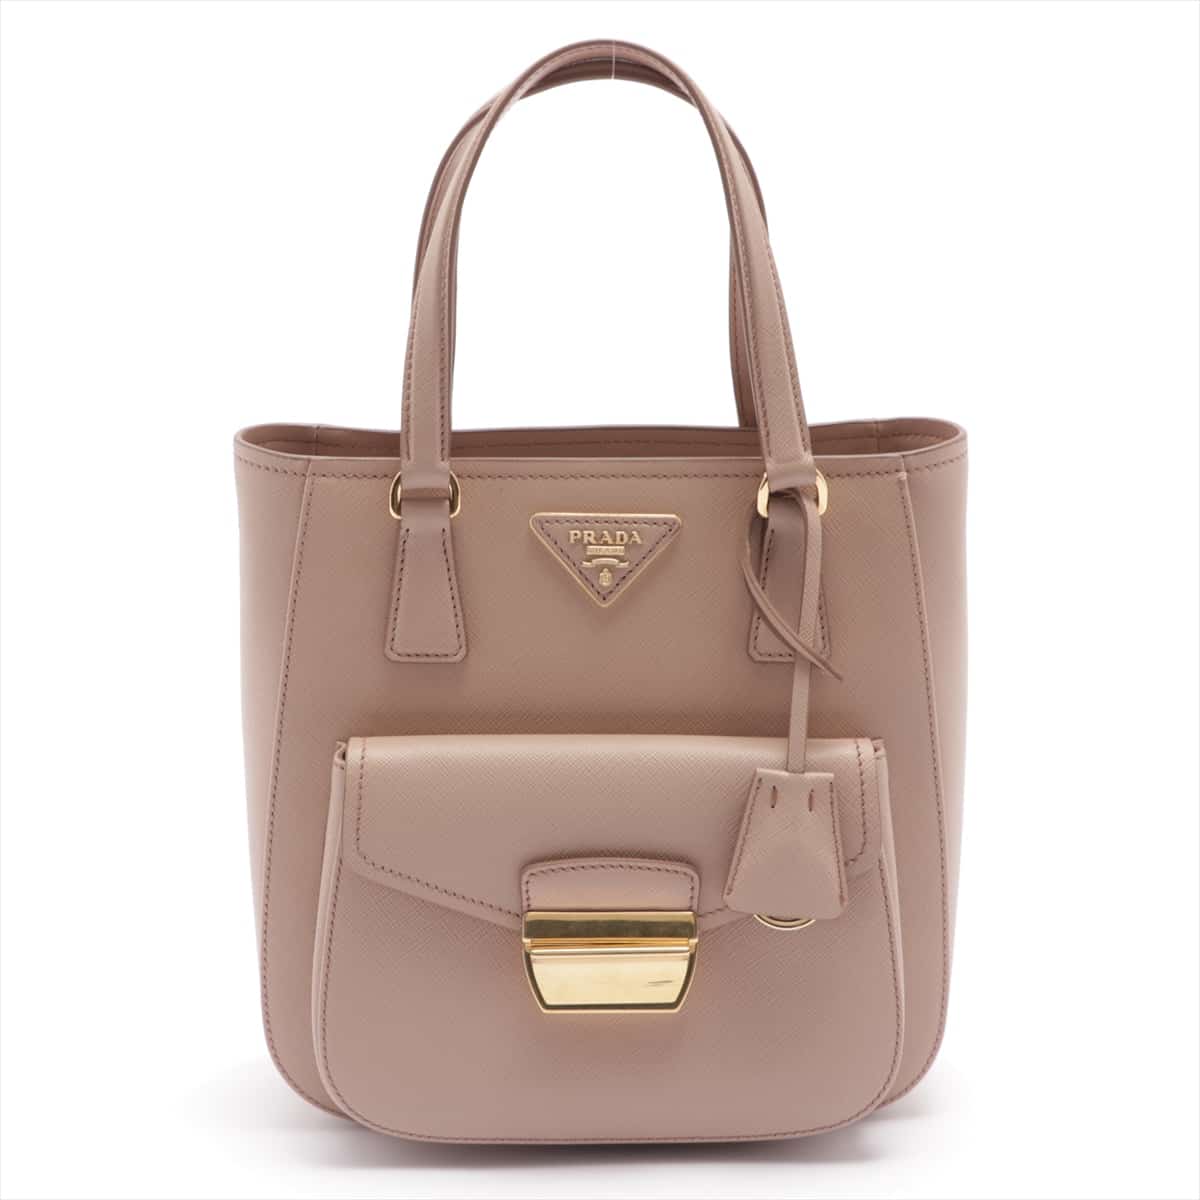 Prada Saffiano Lux 2way handbag Pink 1BA254 open papers